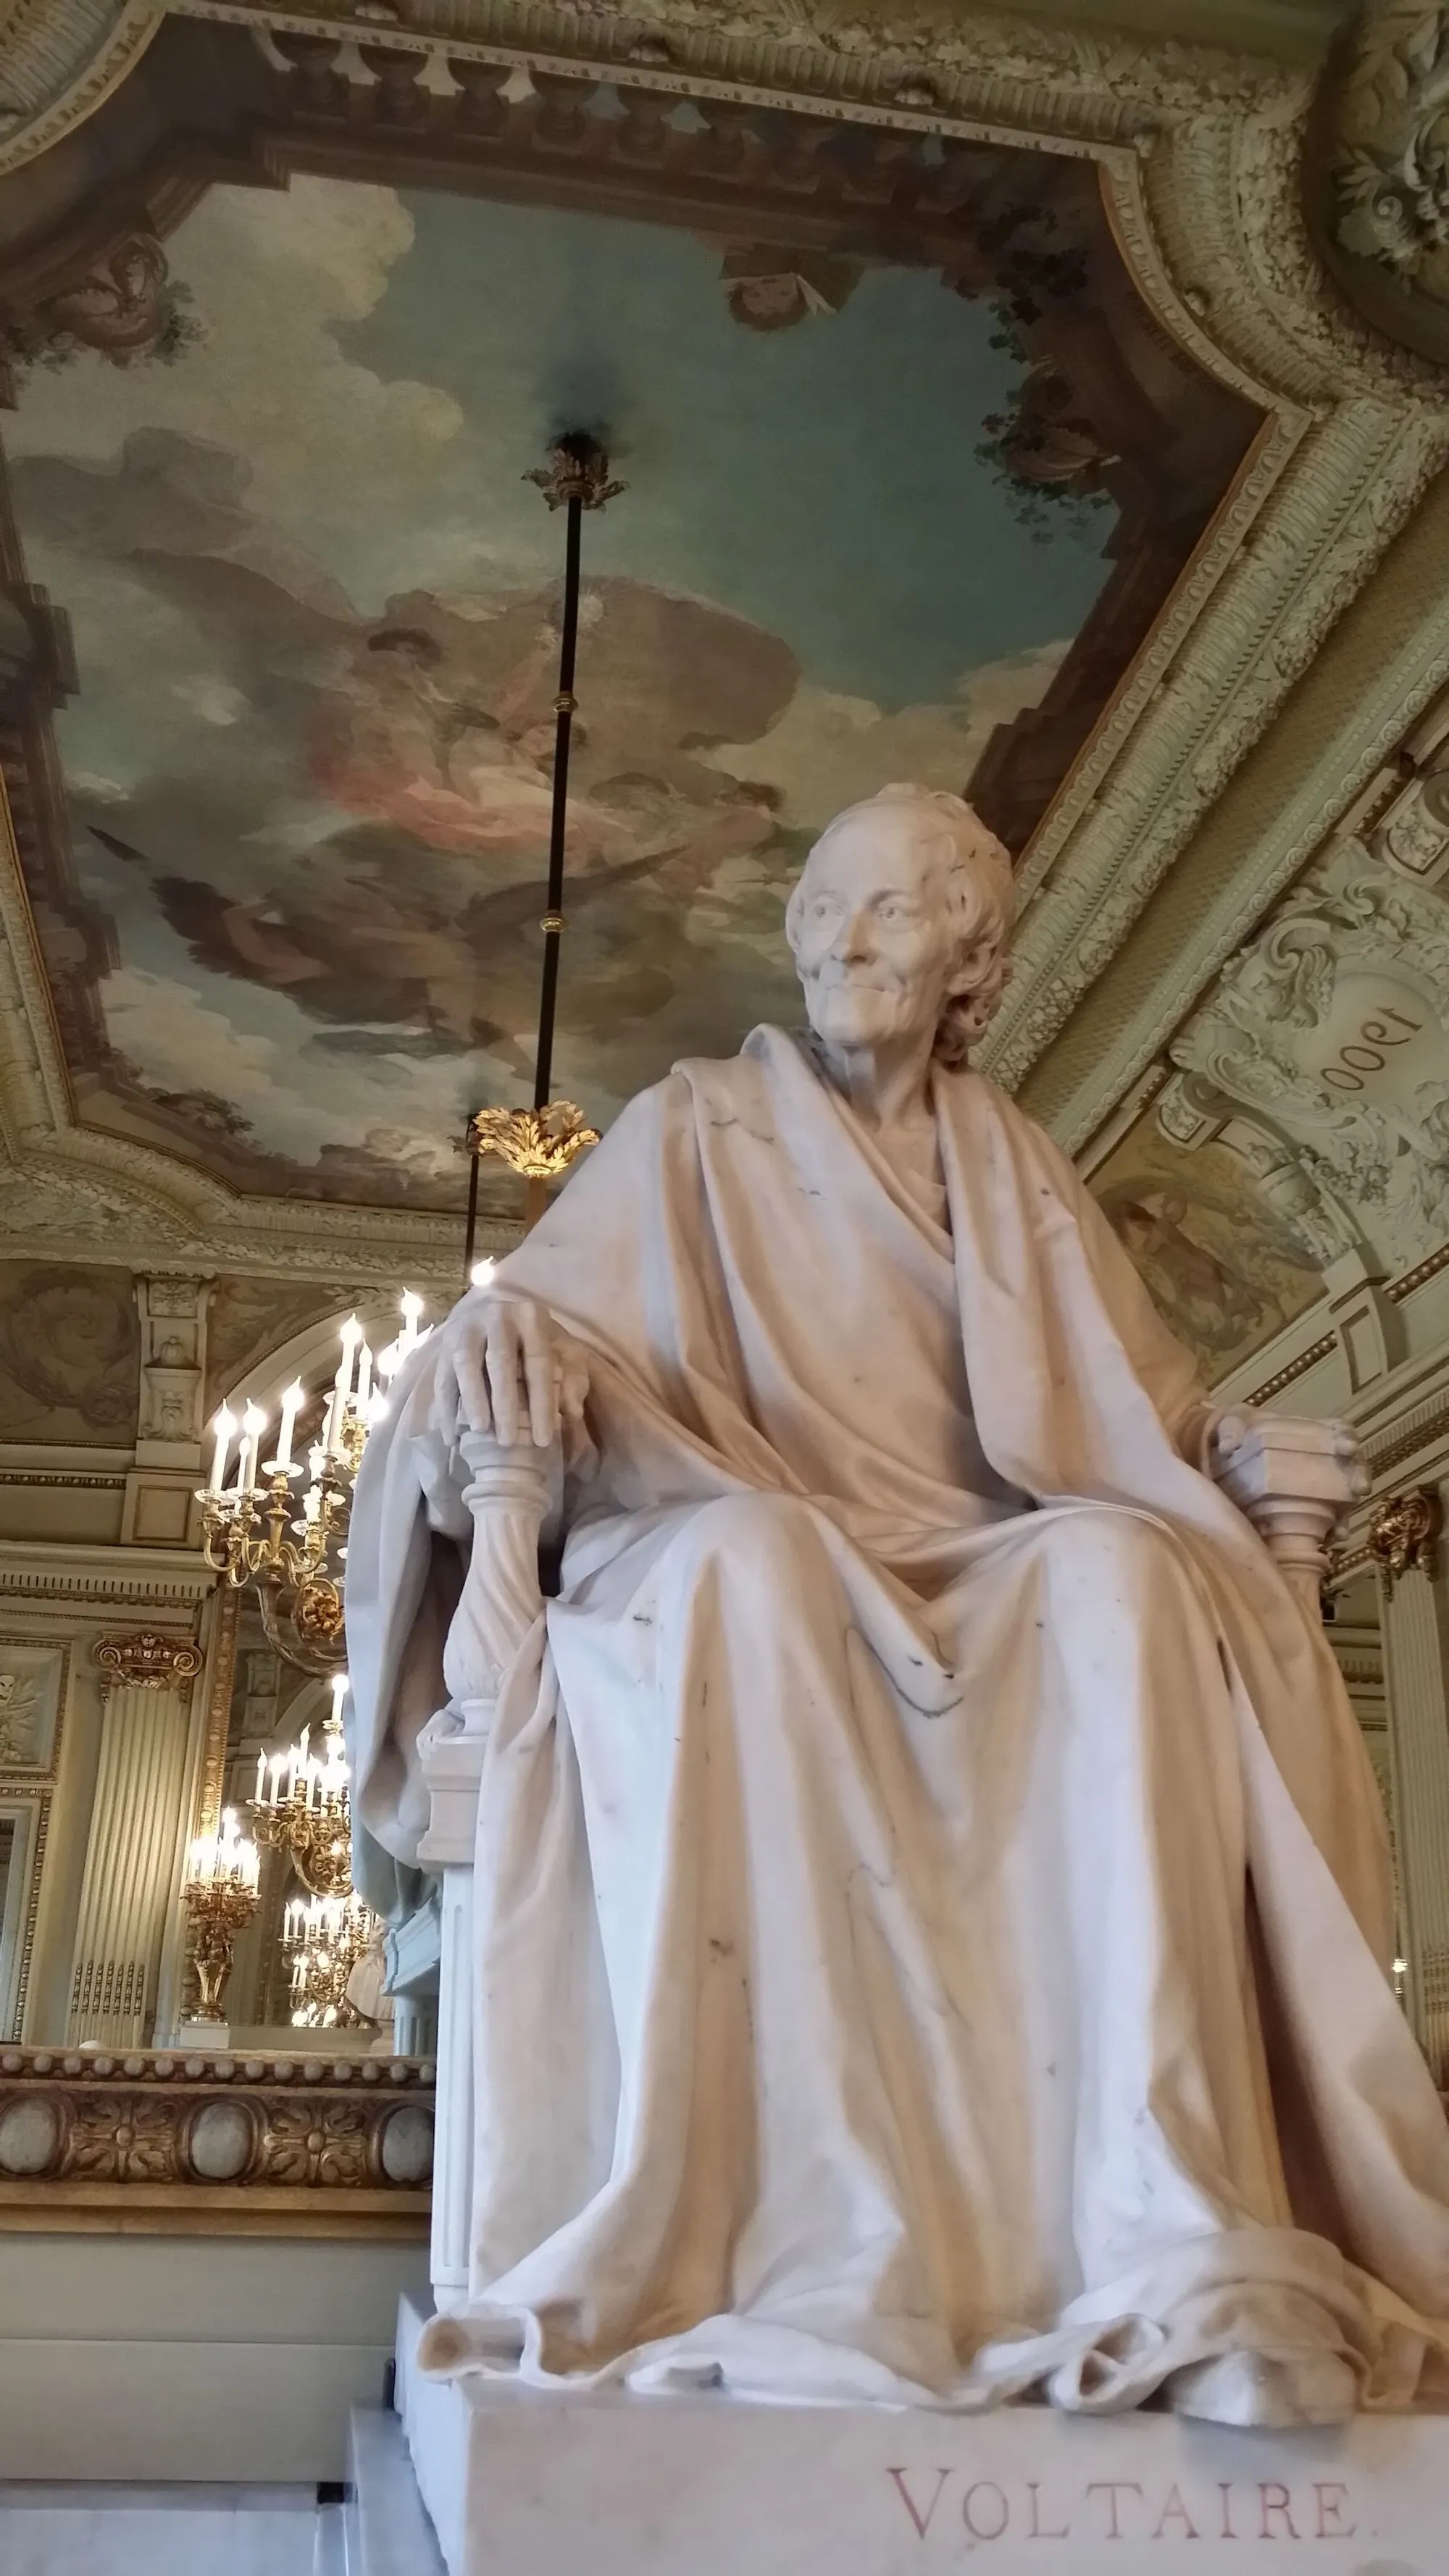 Statue de Voltaire sur la cheminée d'un salon de la Comédie-Française